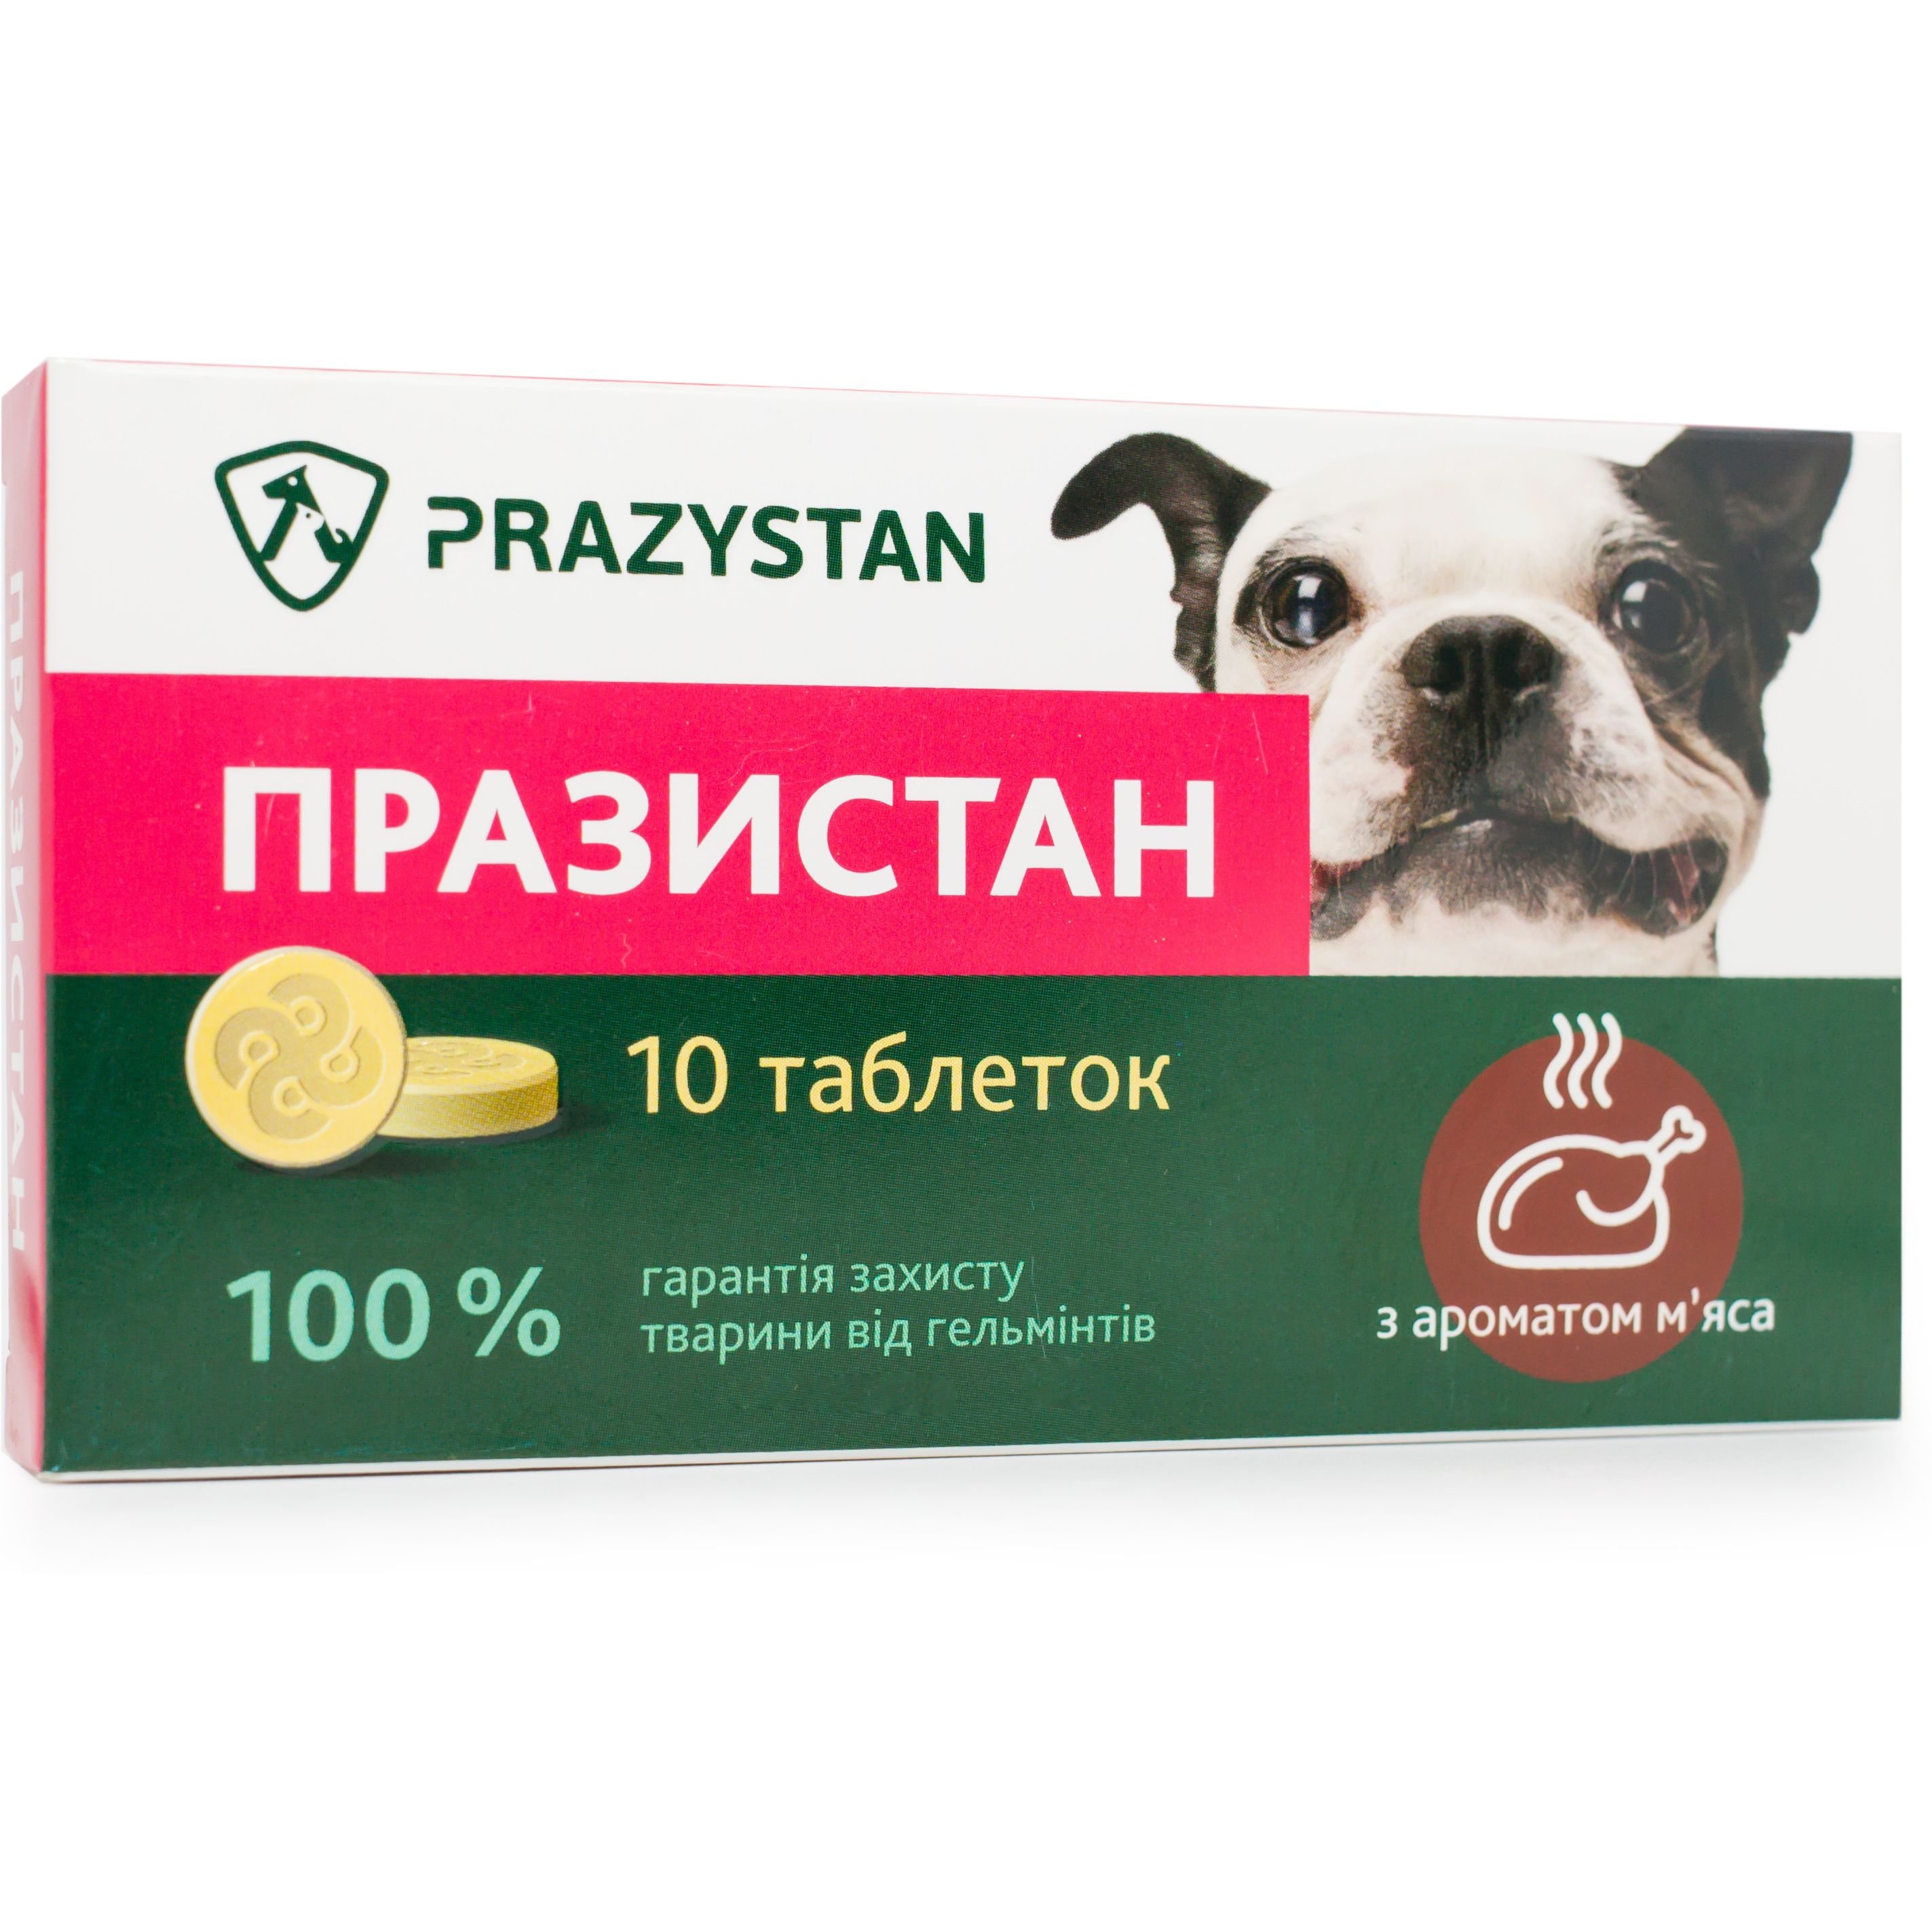 Антигельминтные таблетки Vitomax Празистан для собак с ароматом мяса, 10 таблеток - фото 2